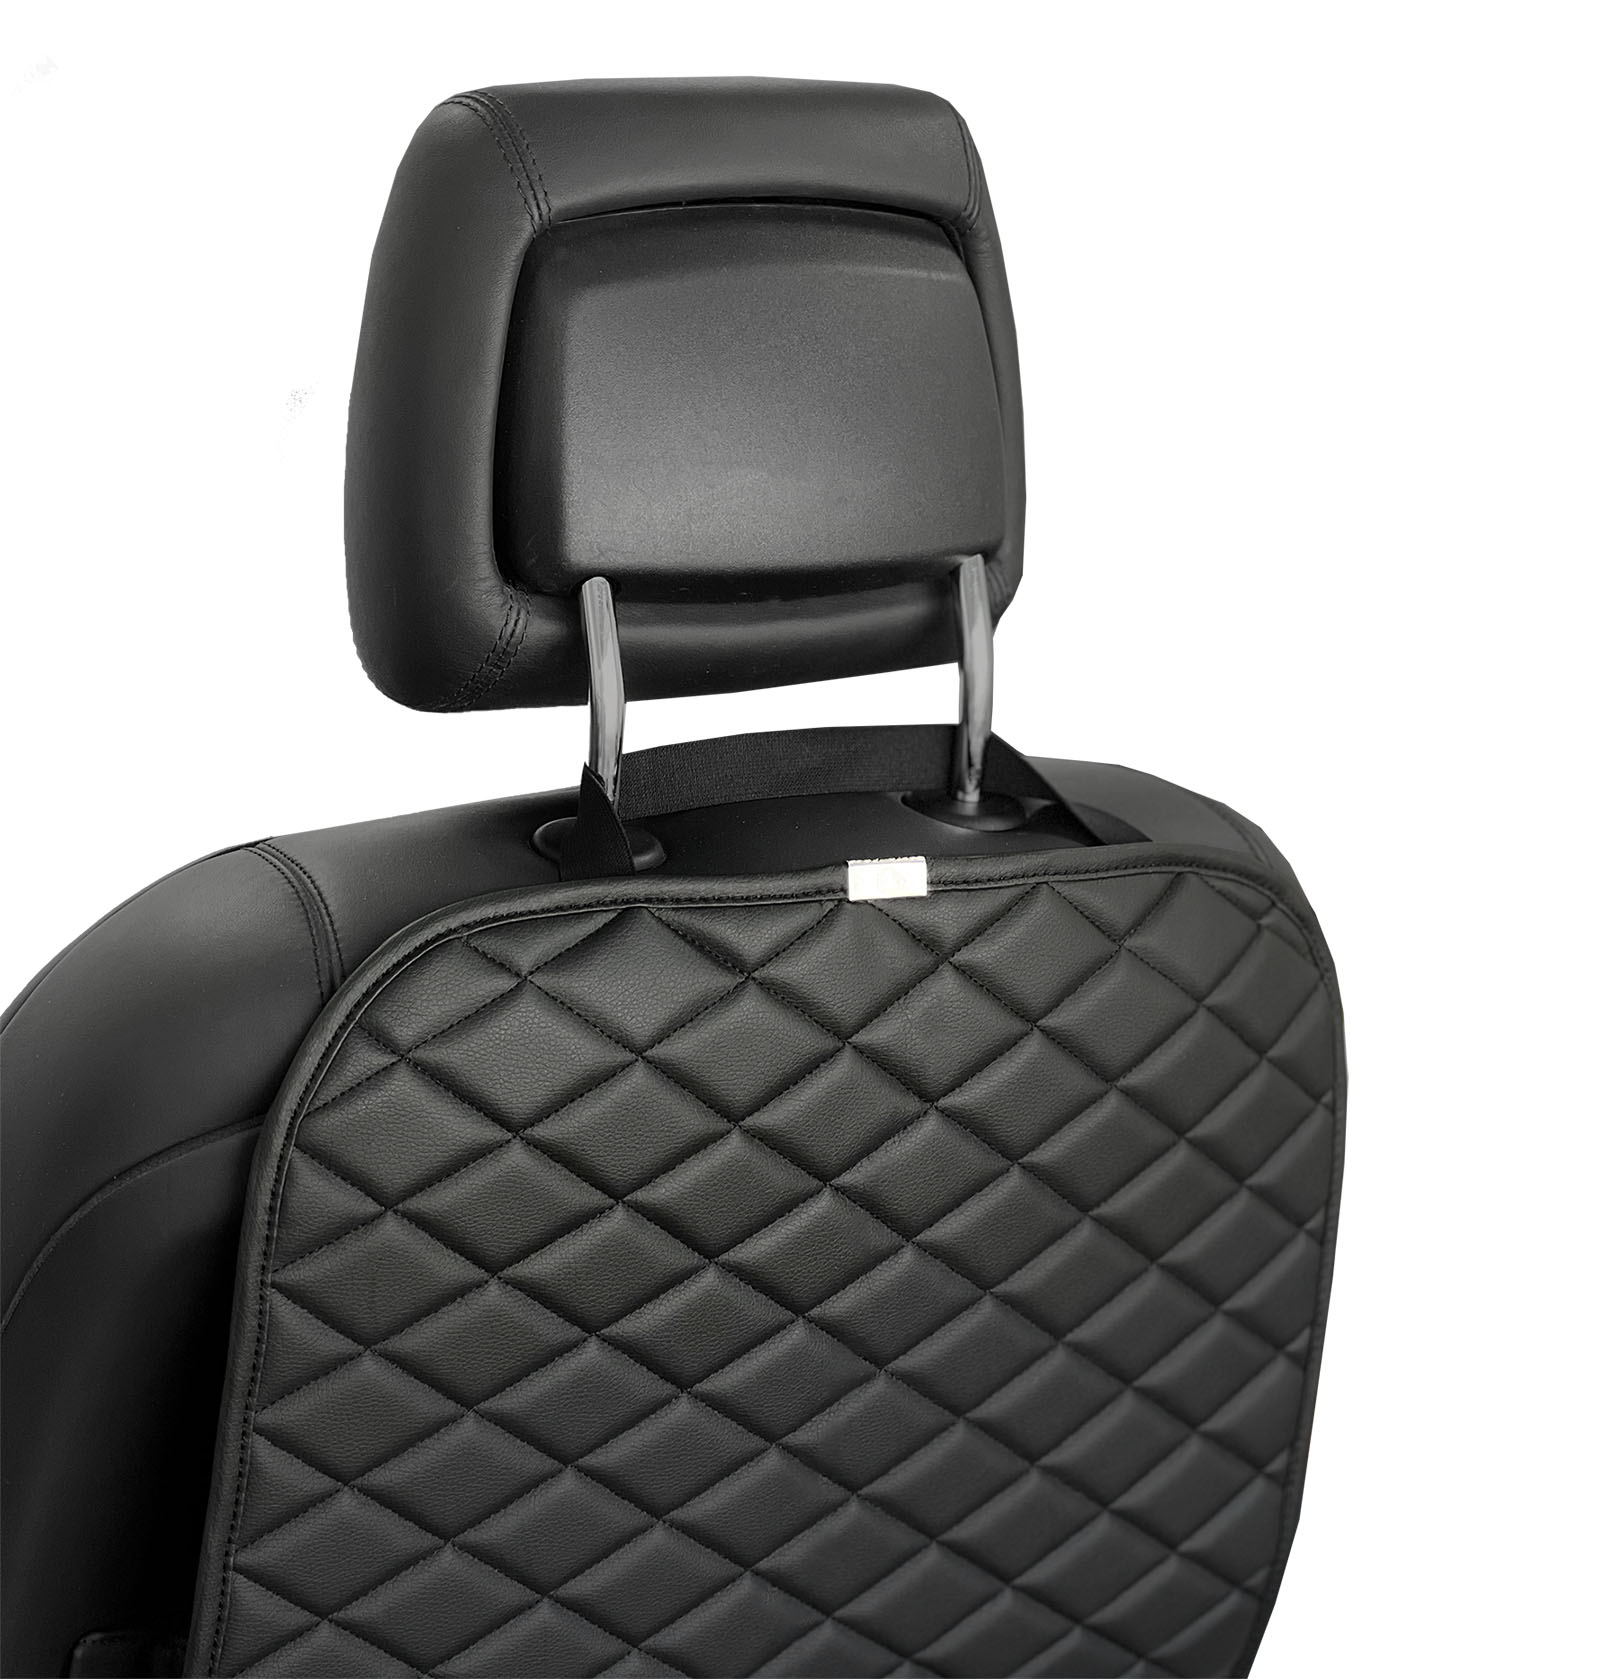  ЗАЩИТНЫЕ НАКИДКИ НА СПИНКУ - Защитная накидка на спинку сиденья черного цвета - фото